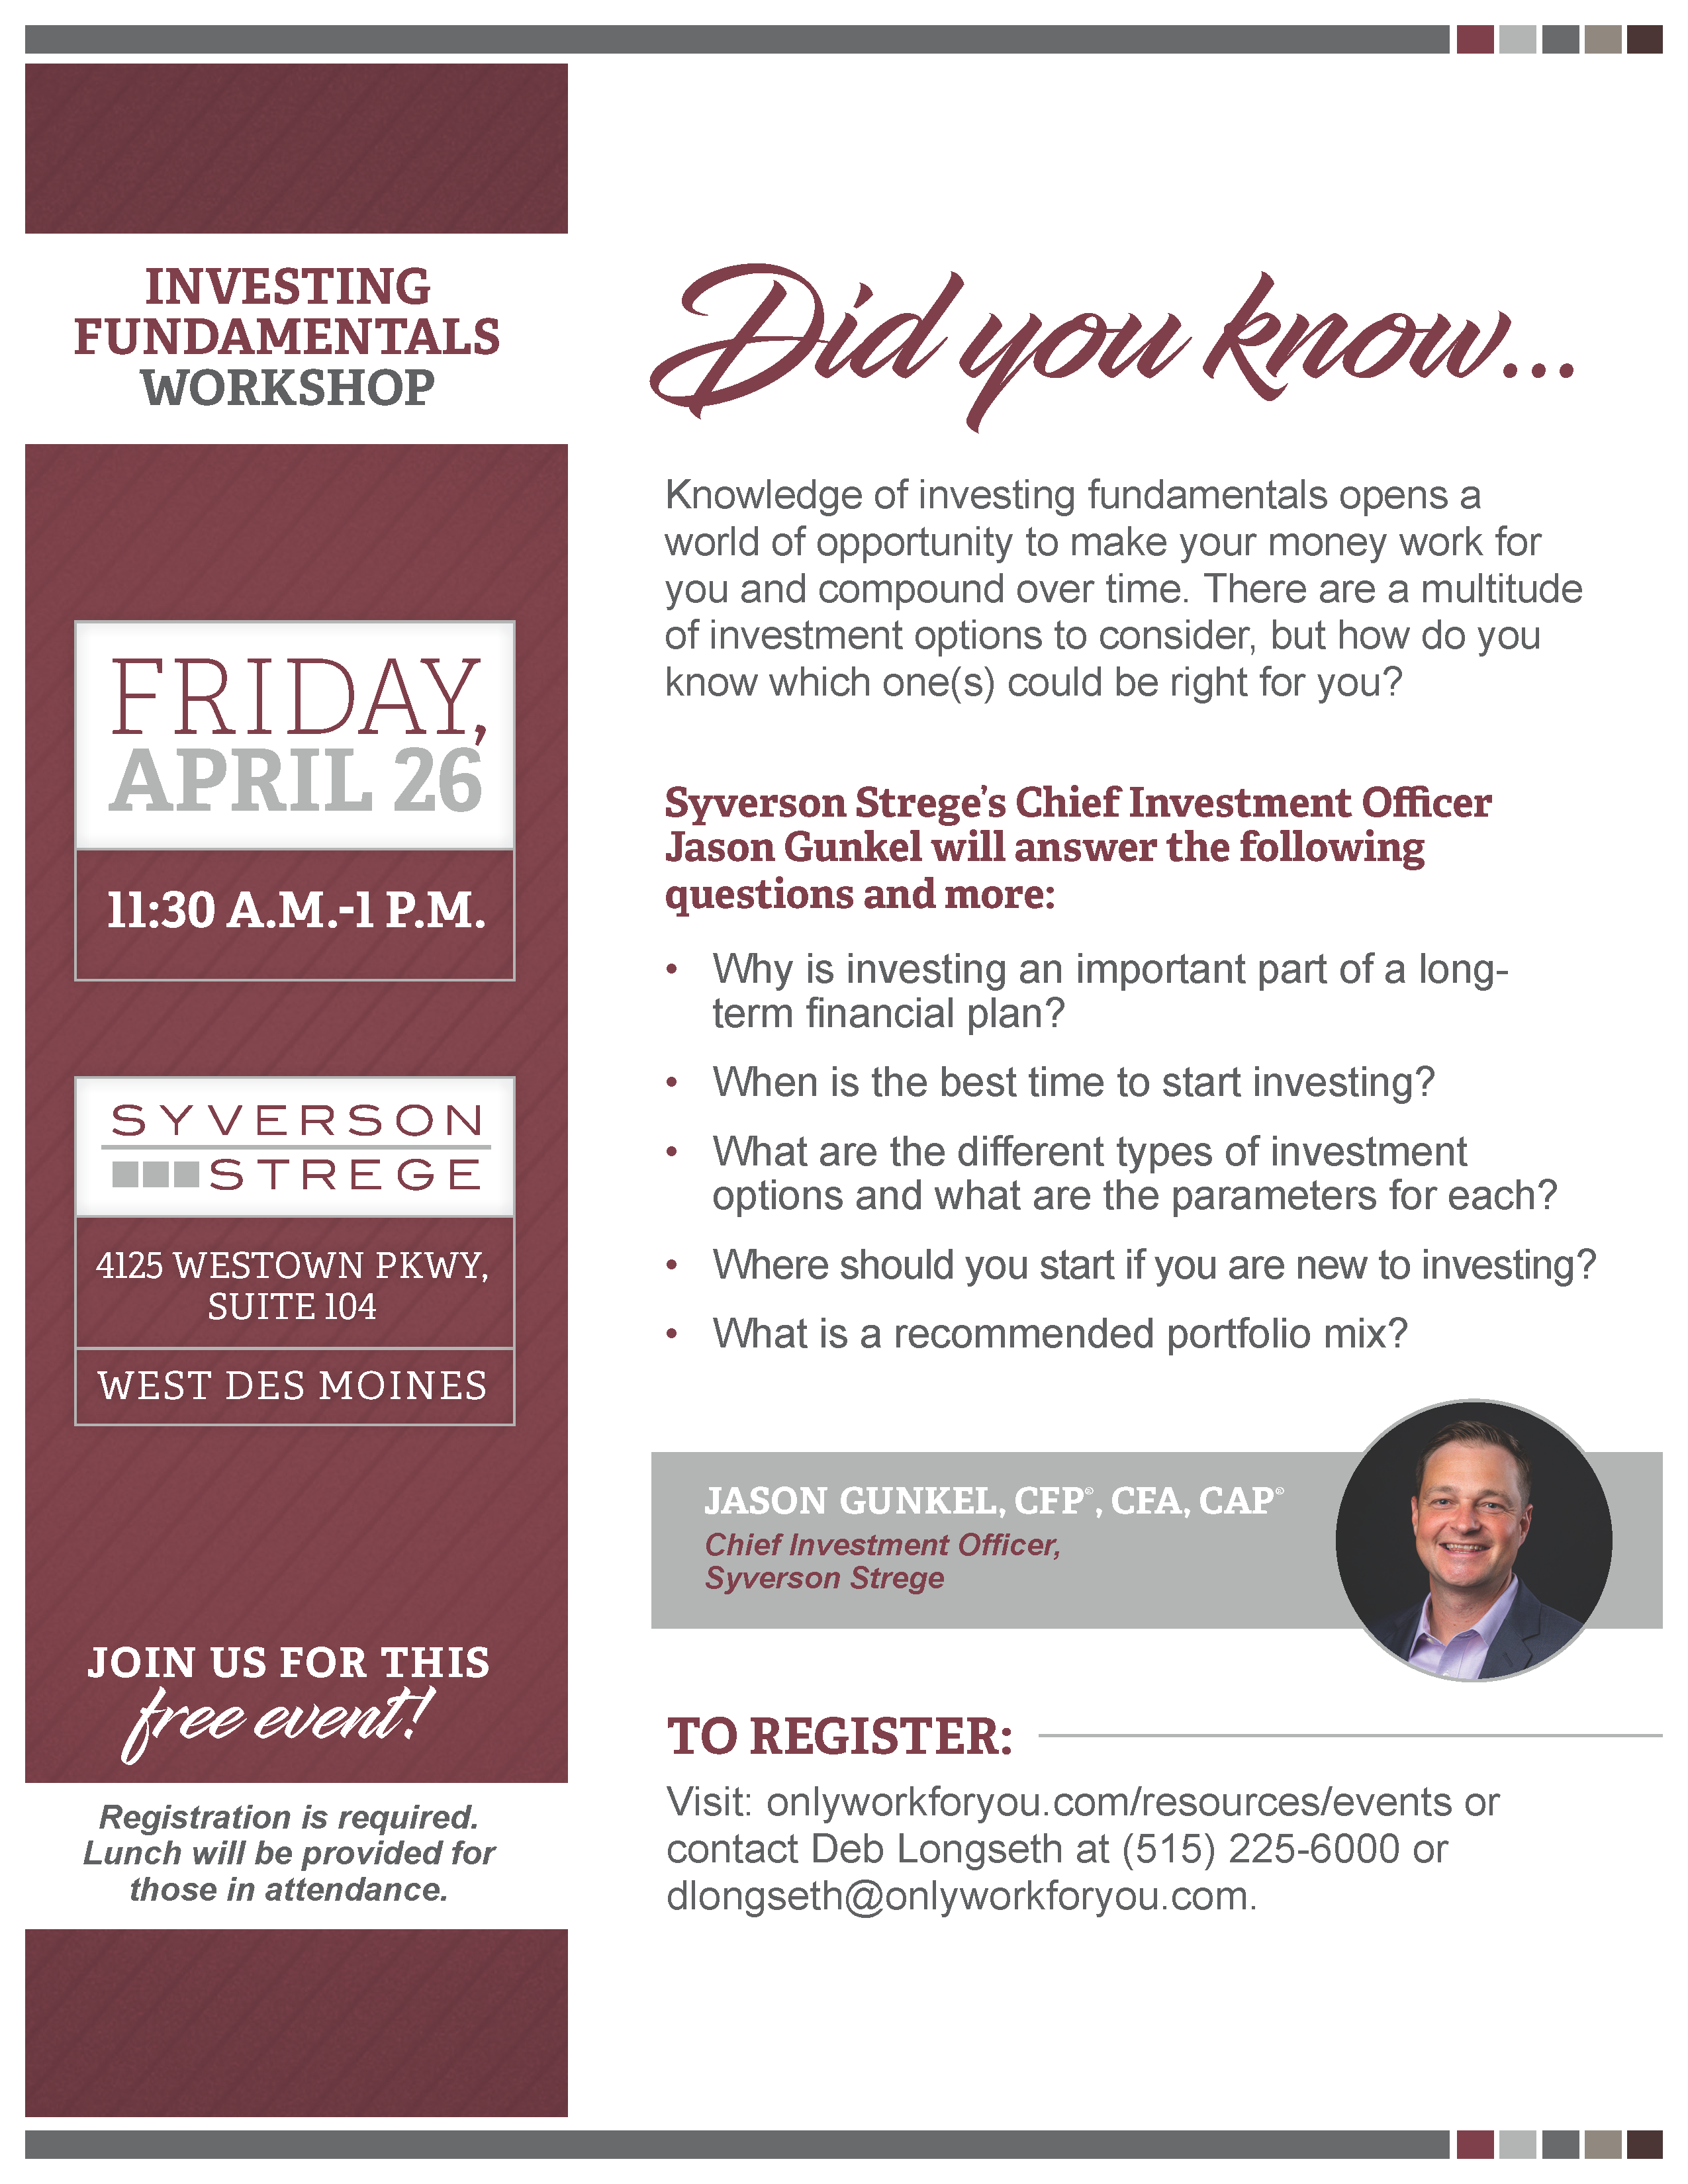 Investing Fundamentals Workshop Flyer